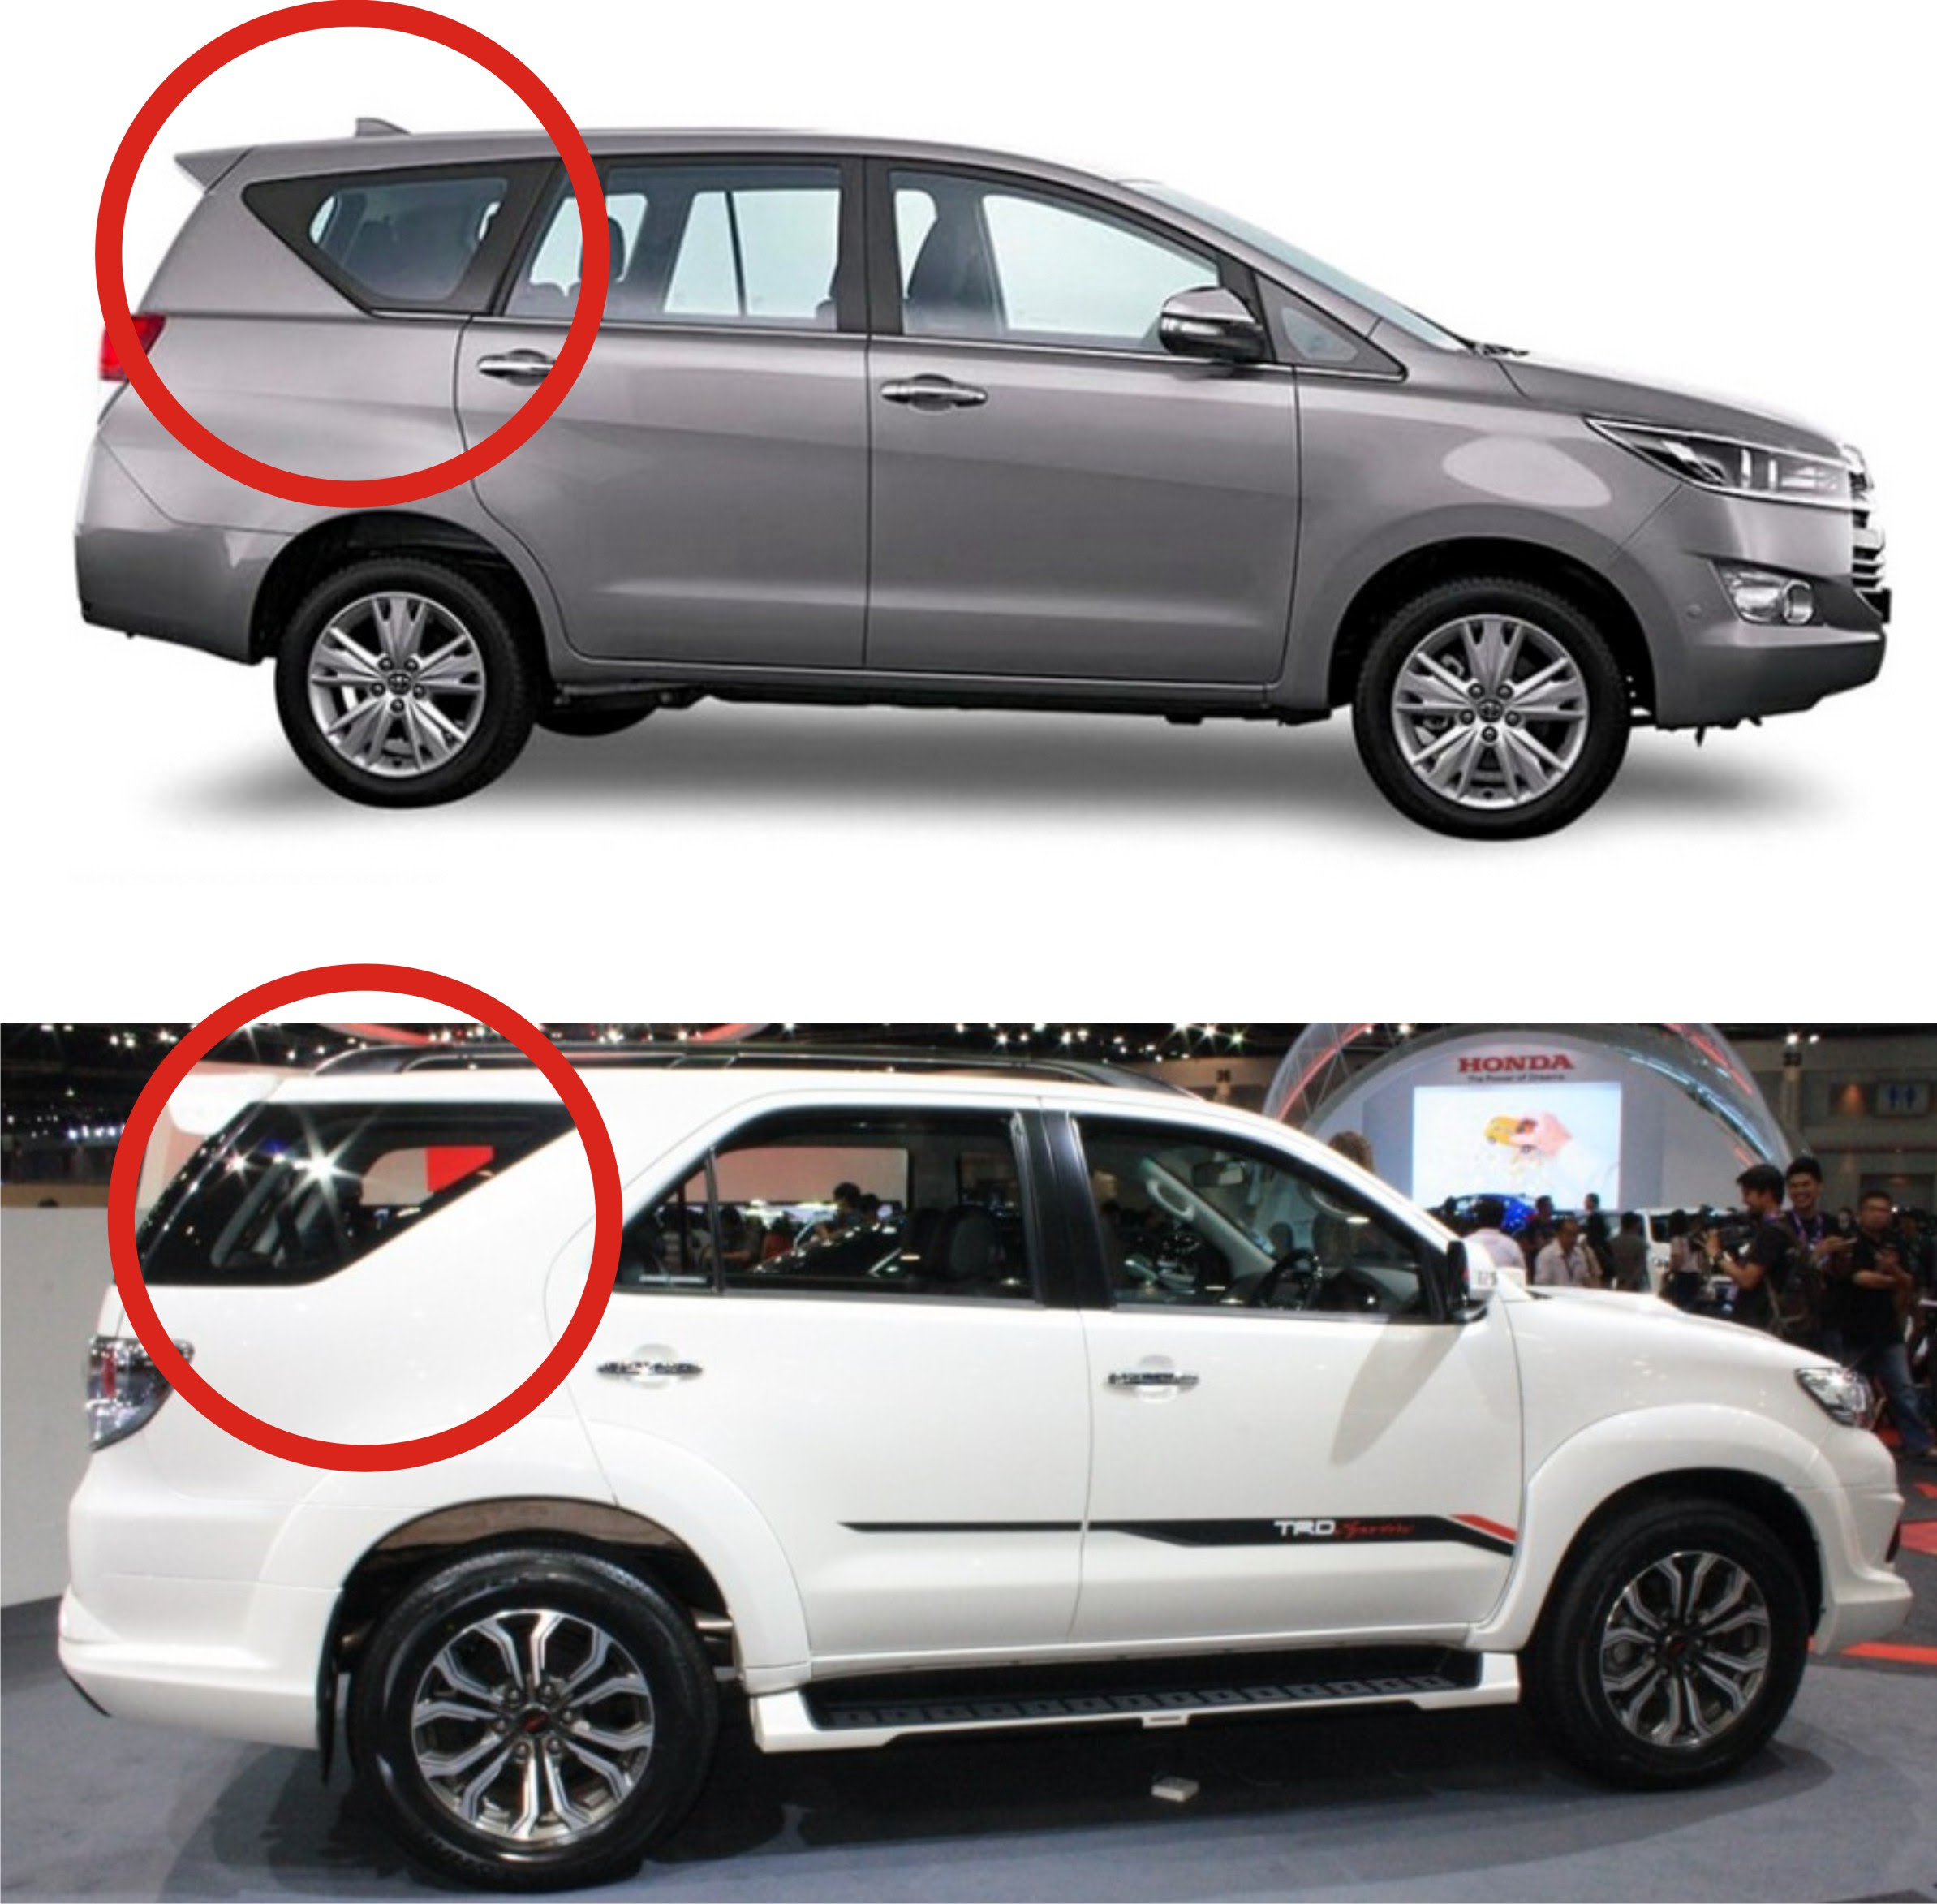 Harga Toyota Fortuner Bekas Surabaya - Harga C